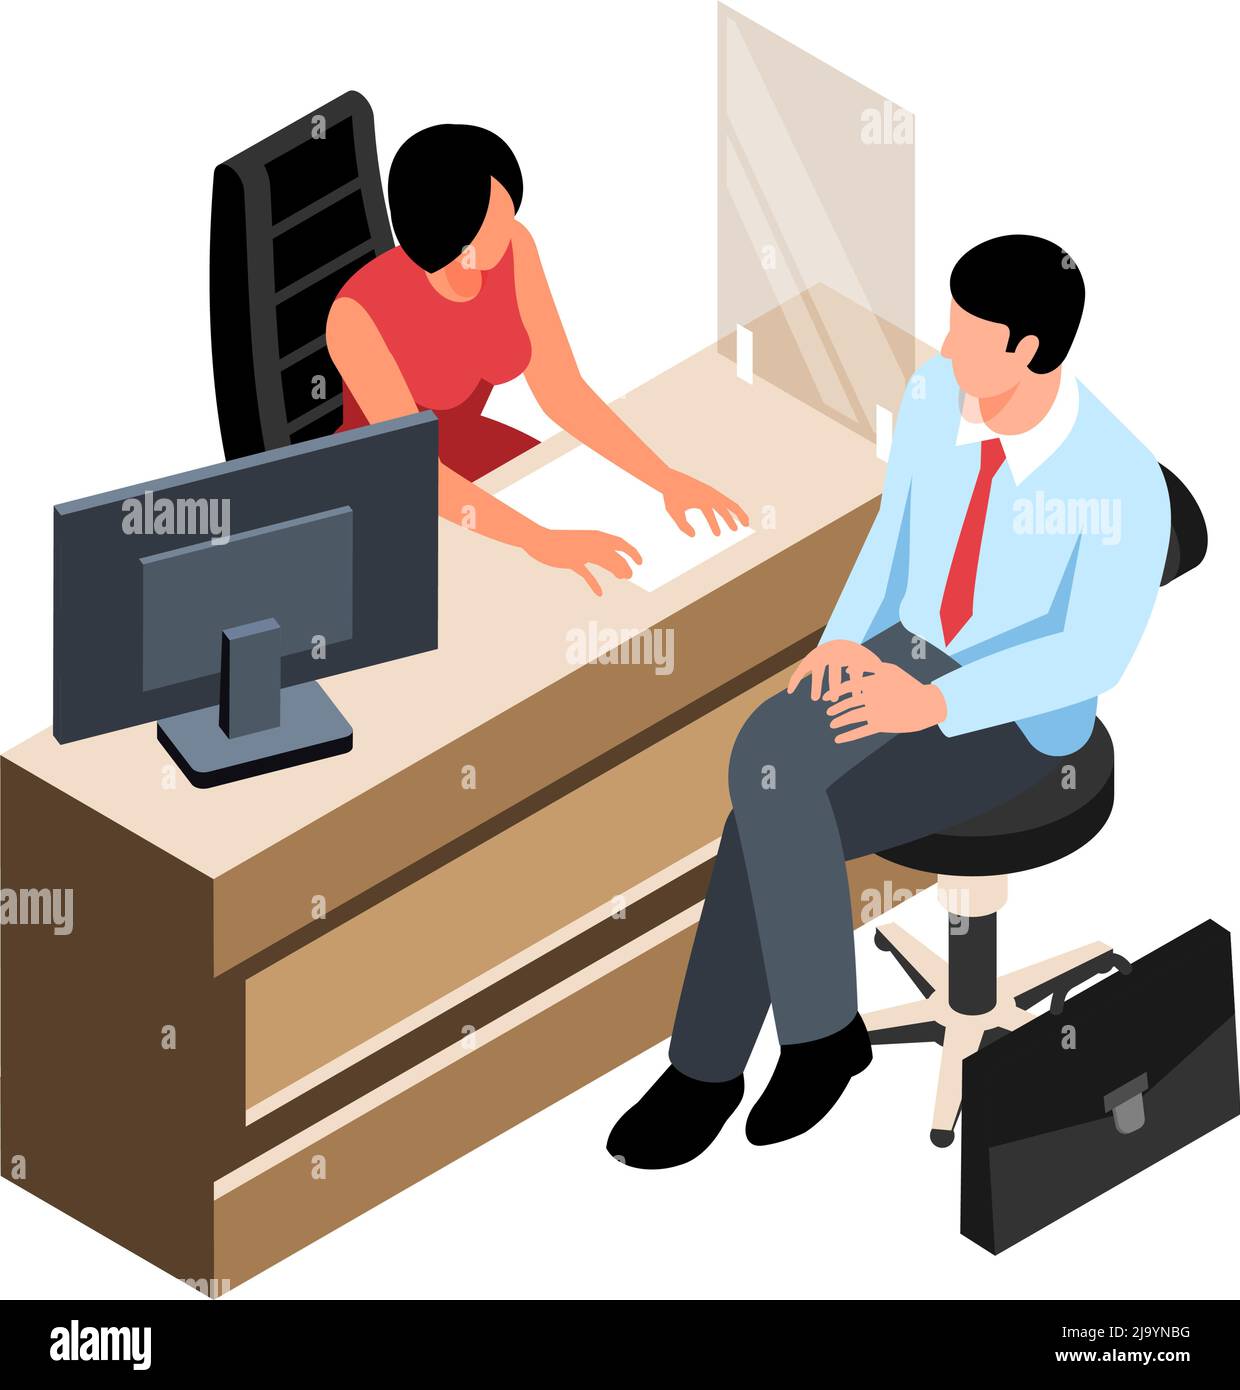 Composizione isometrica della banca con il personaggio del cliente seduto al banco con illustrazione vettoriale dell'impiegato di lavoro Illustrazione Vettoriale